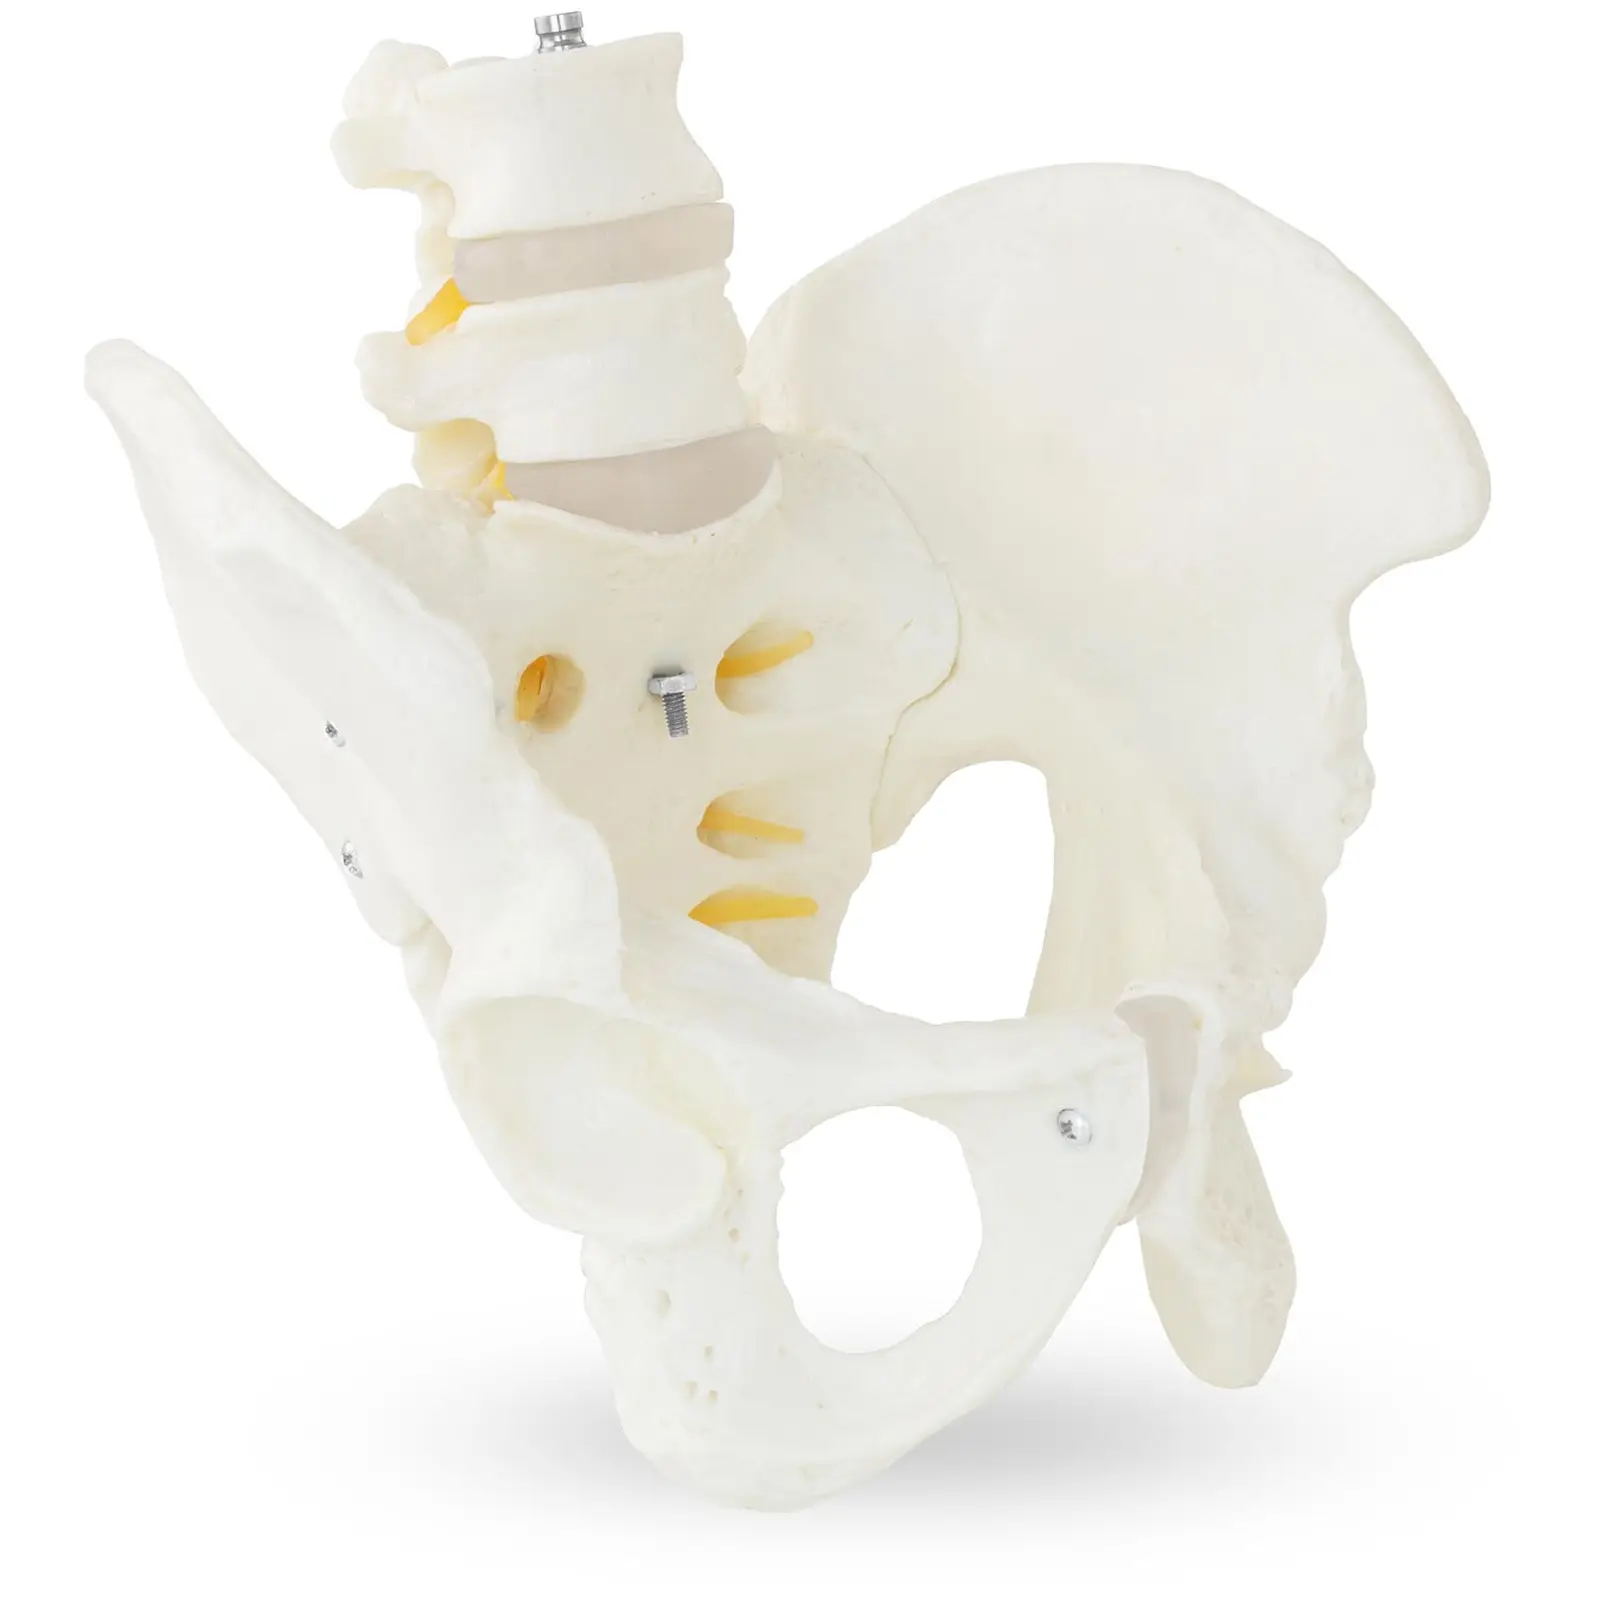 Bækken-model med lændehvirvel - mandligt skelet